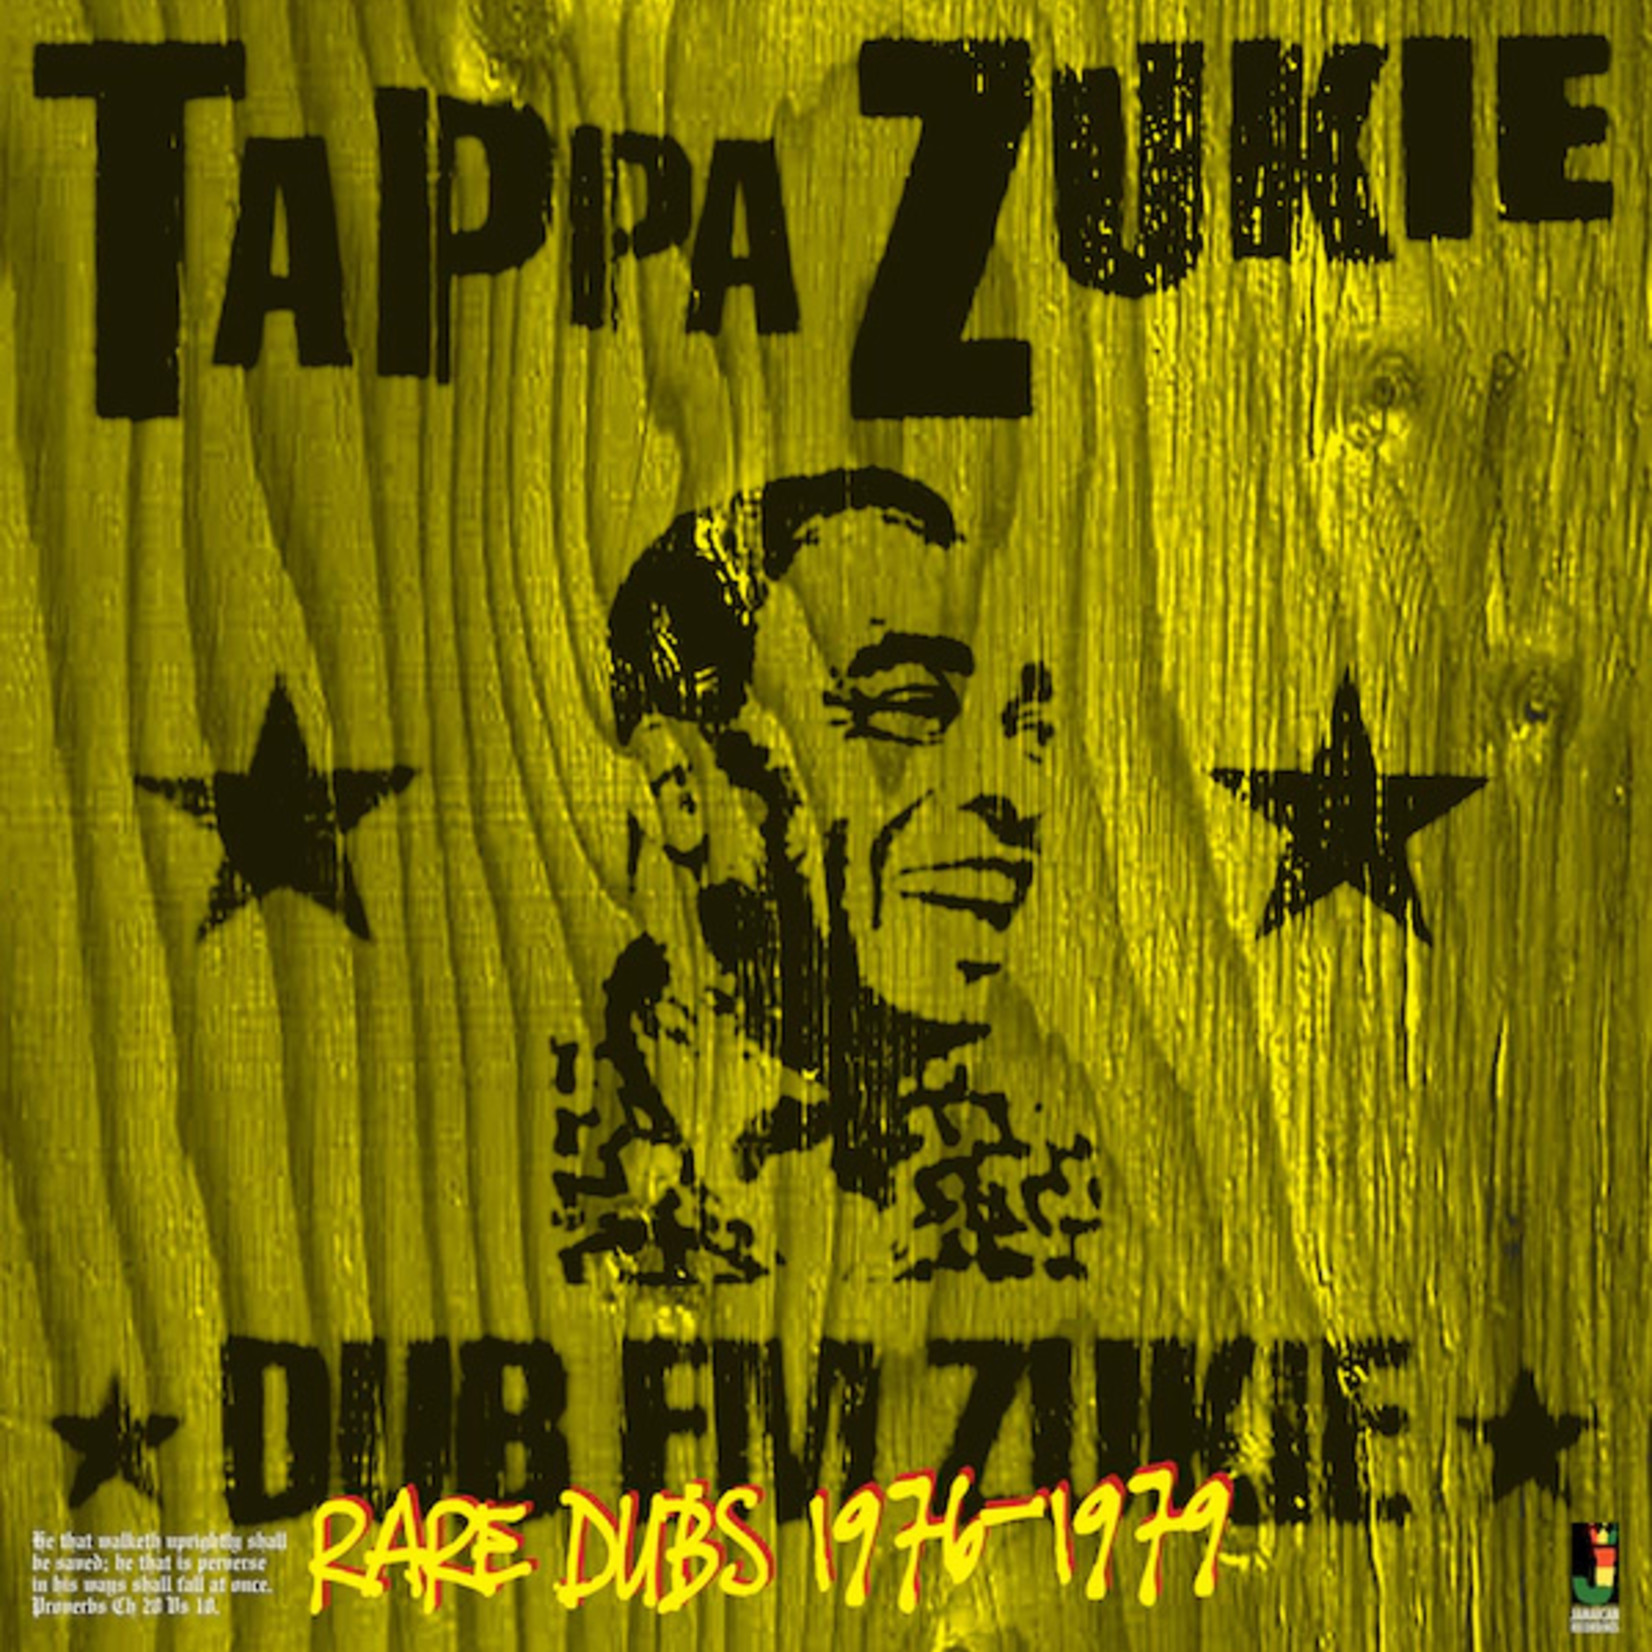 Tappa Zukie  Dub Em Zukie  Rare Dubs 1976-1979